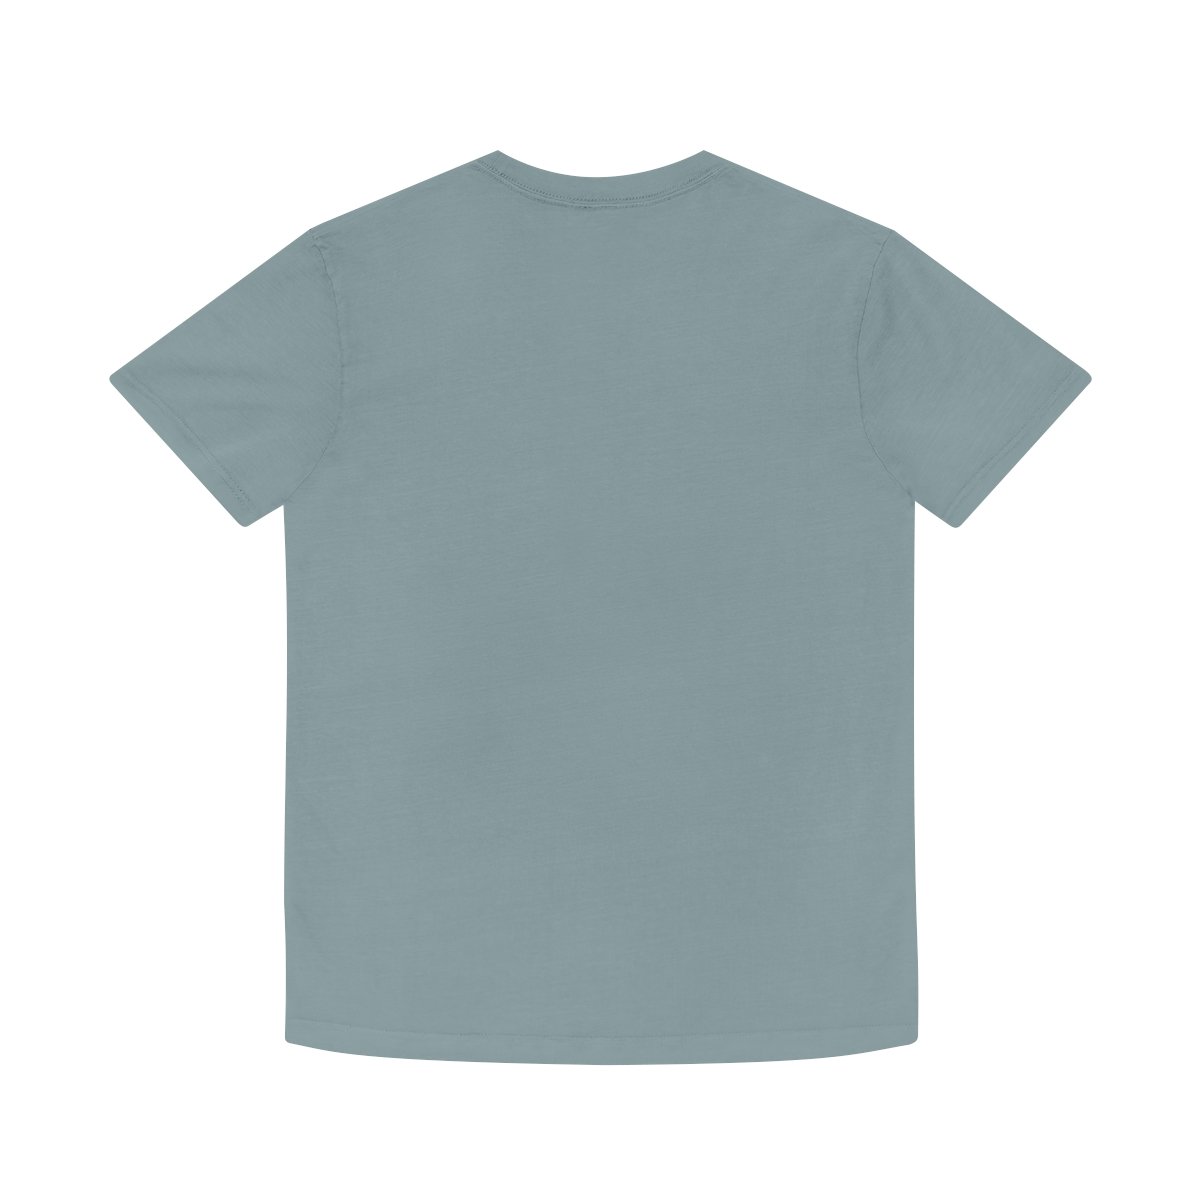 Unisex Faded Shirt - Apogee indigo